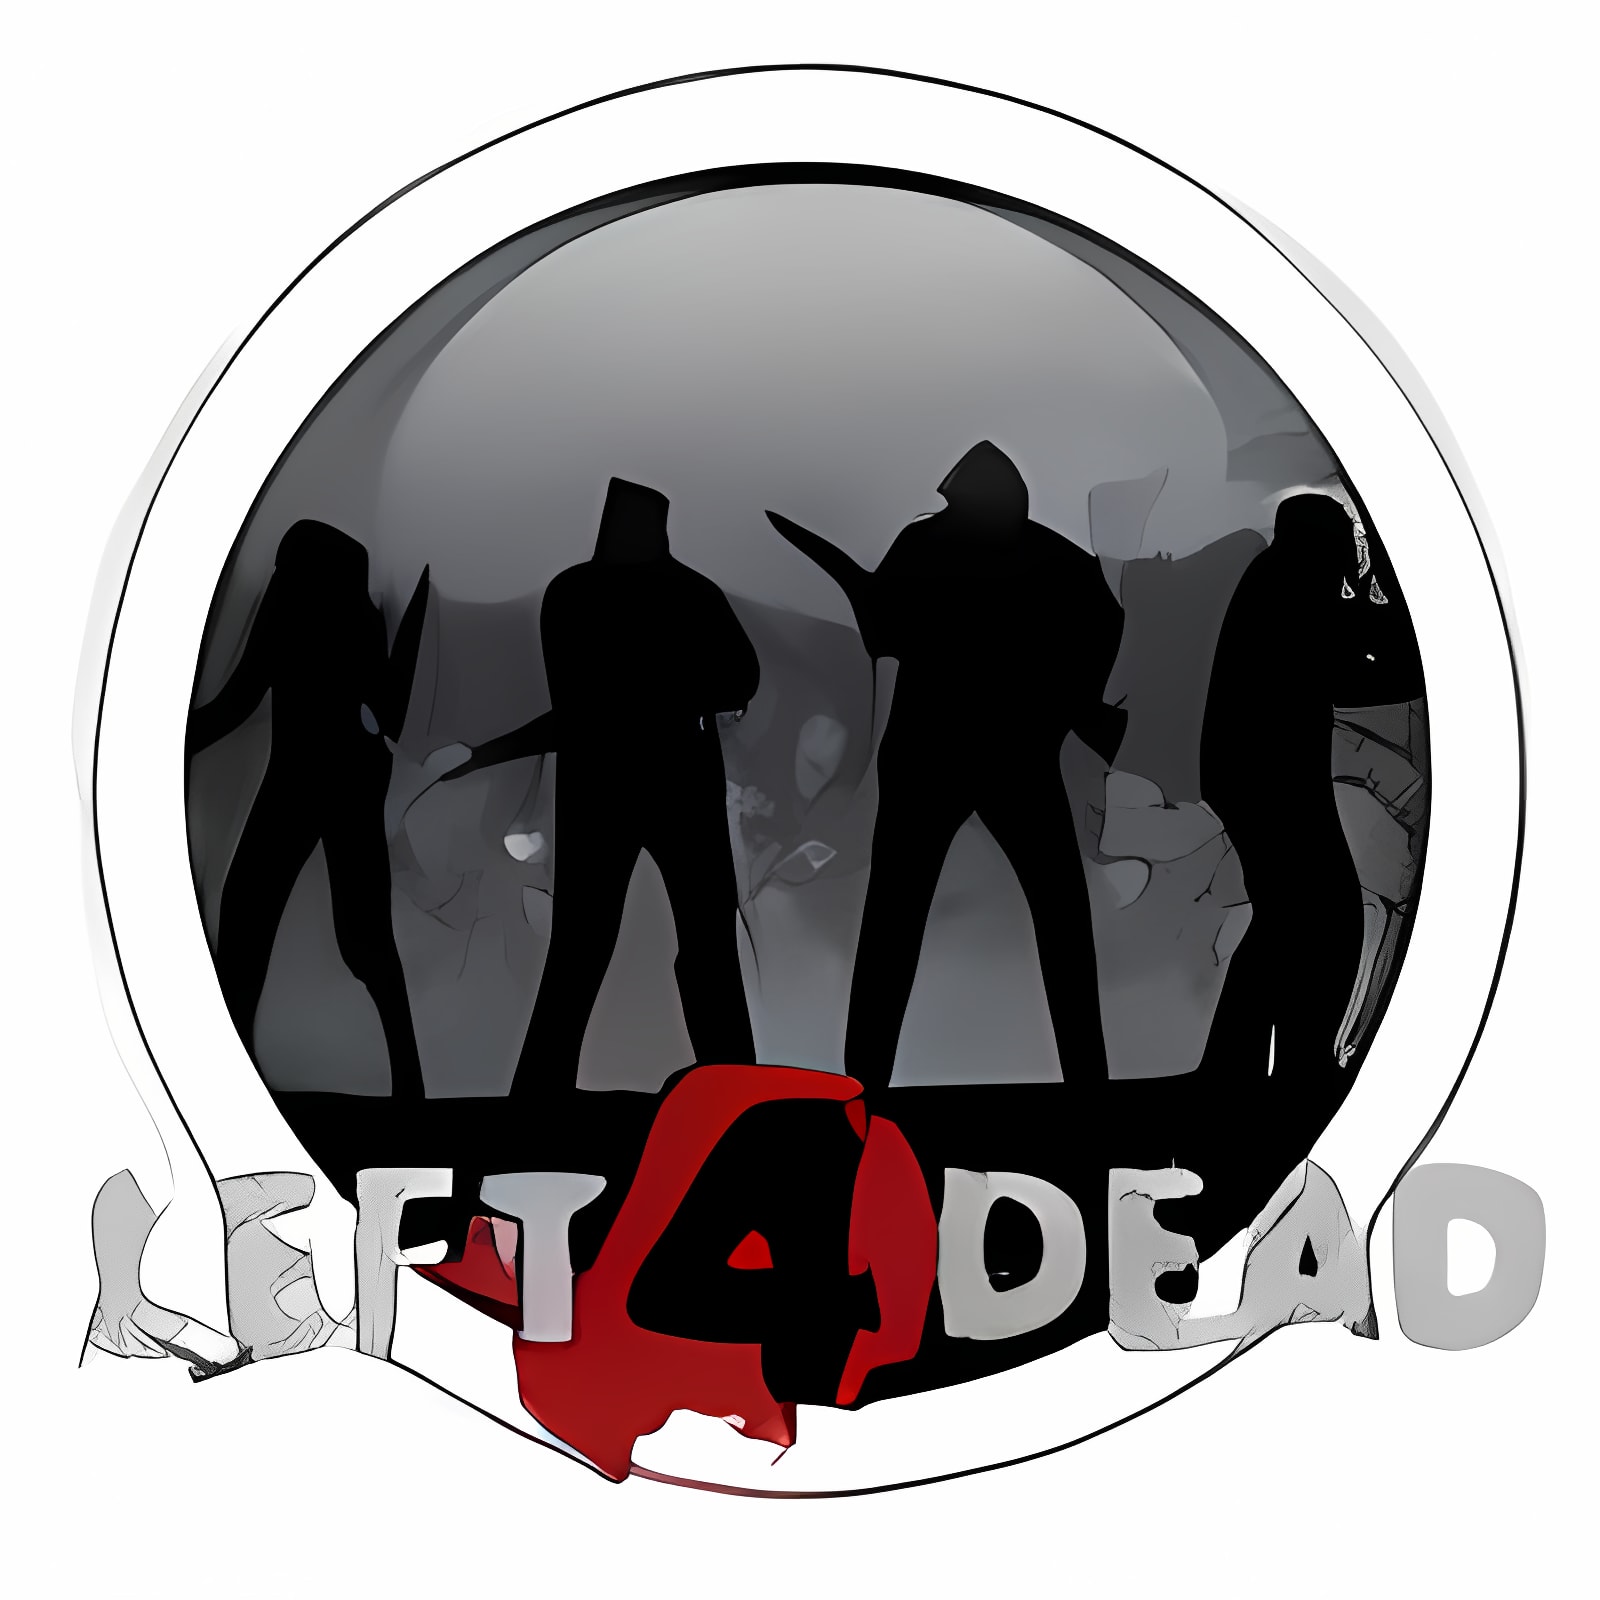 left 4 dead release date